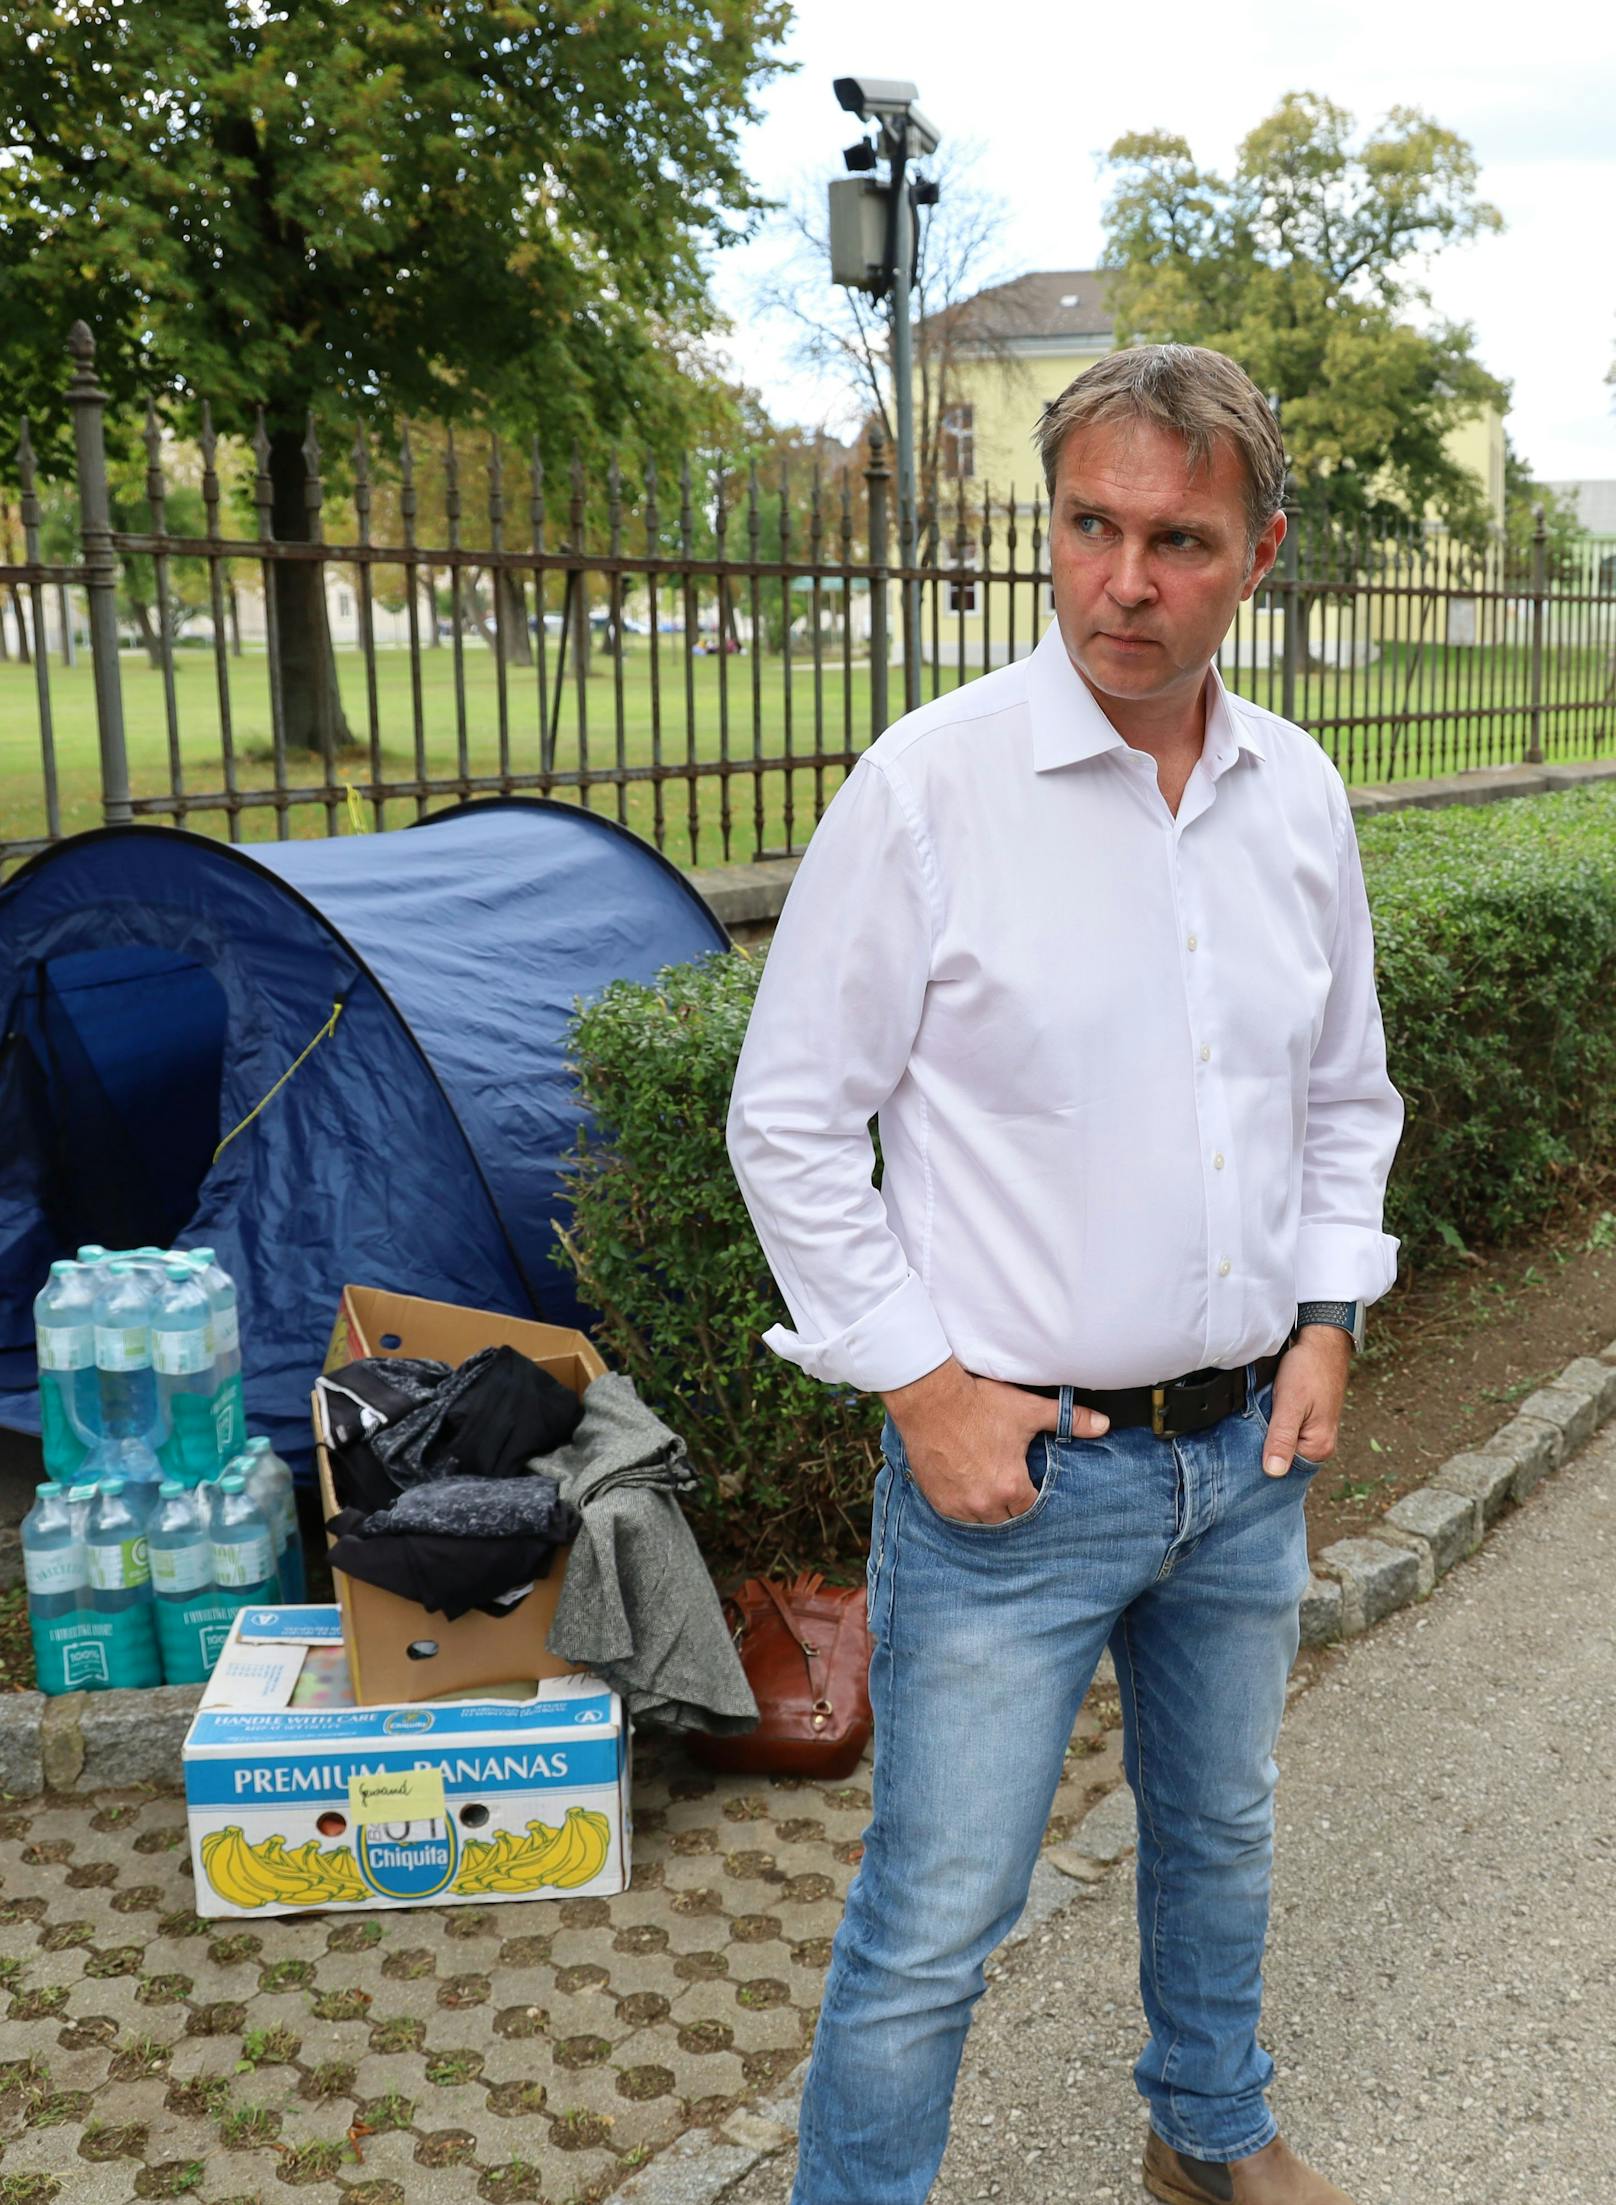 Bürgermeister Andreas Babler (SP) sagt: "Ich würde das Problem binnen fünf Tagen lösen. Das Massenlager ist eine Schande."